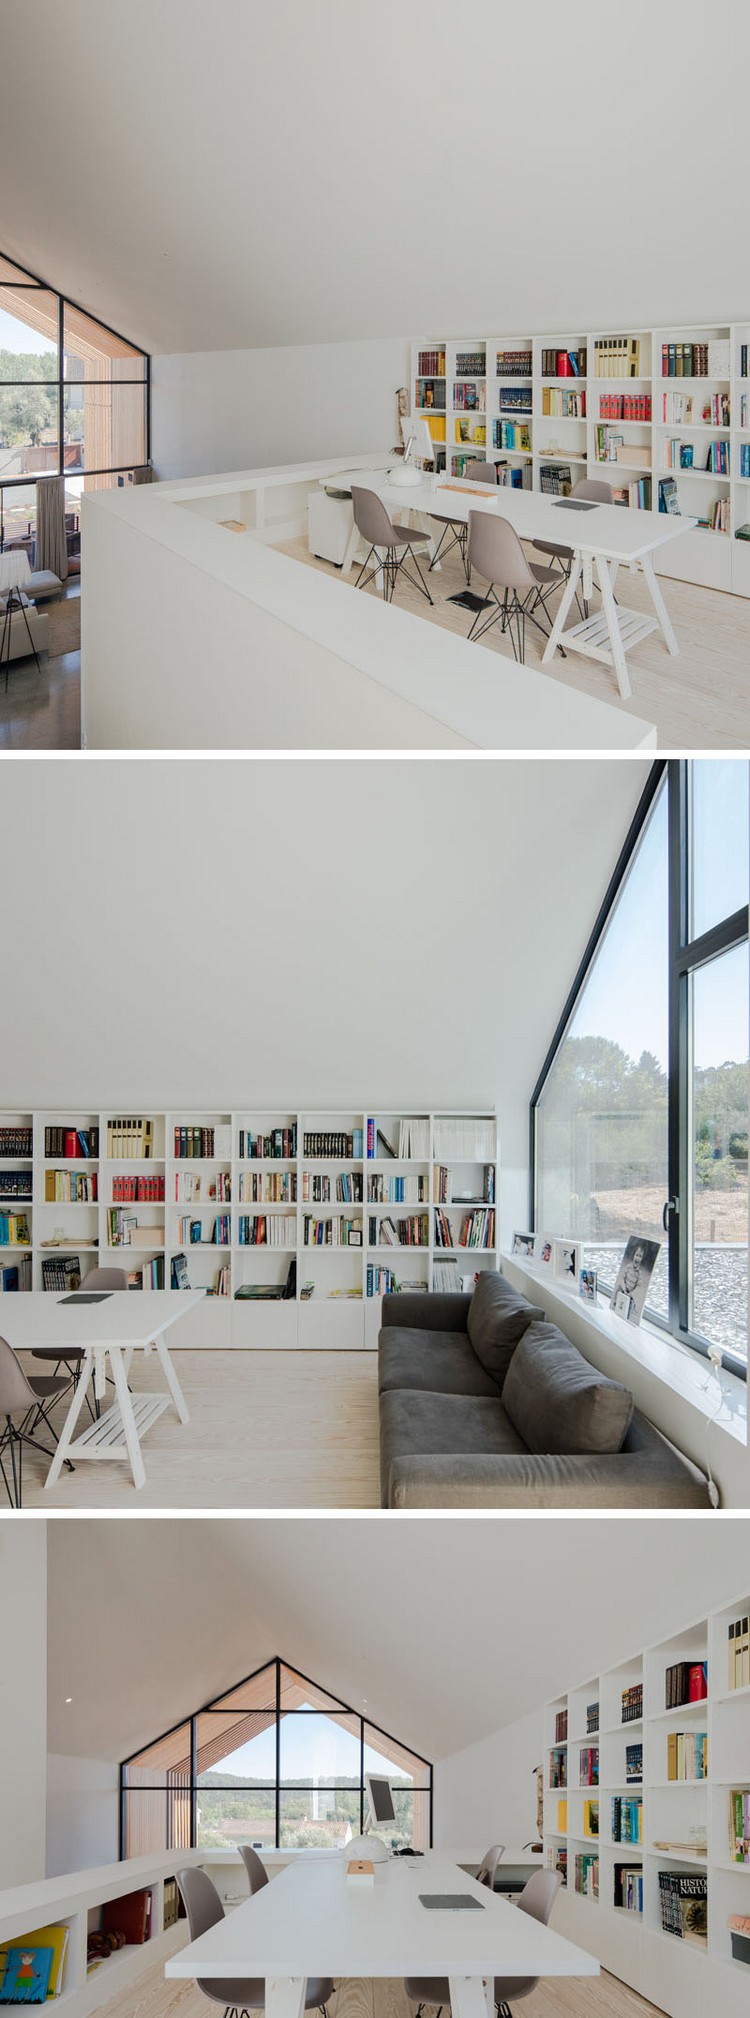 fenêtre sur mesure maison architecte intérieur blanc mobilier contemporain